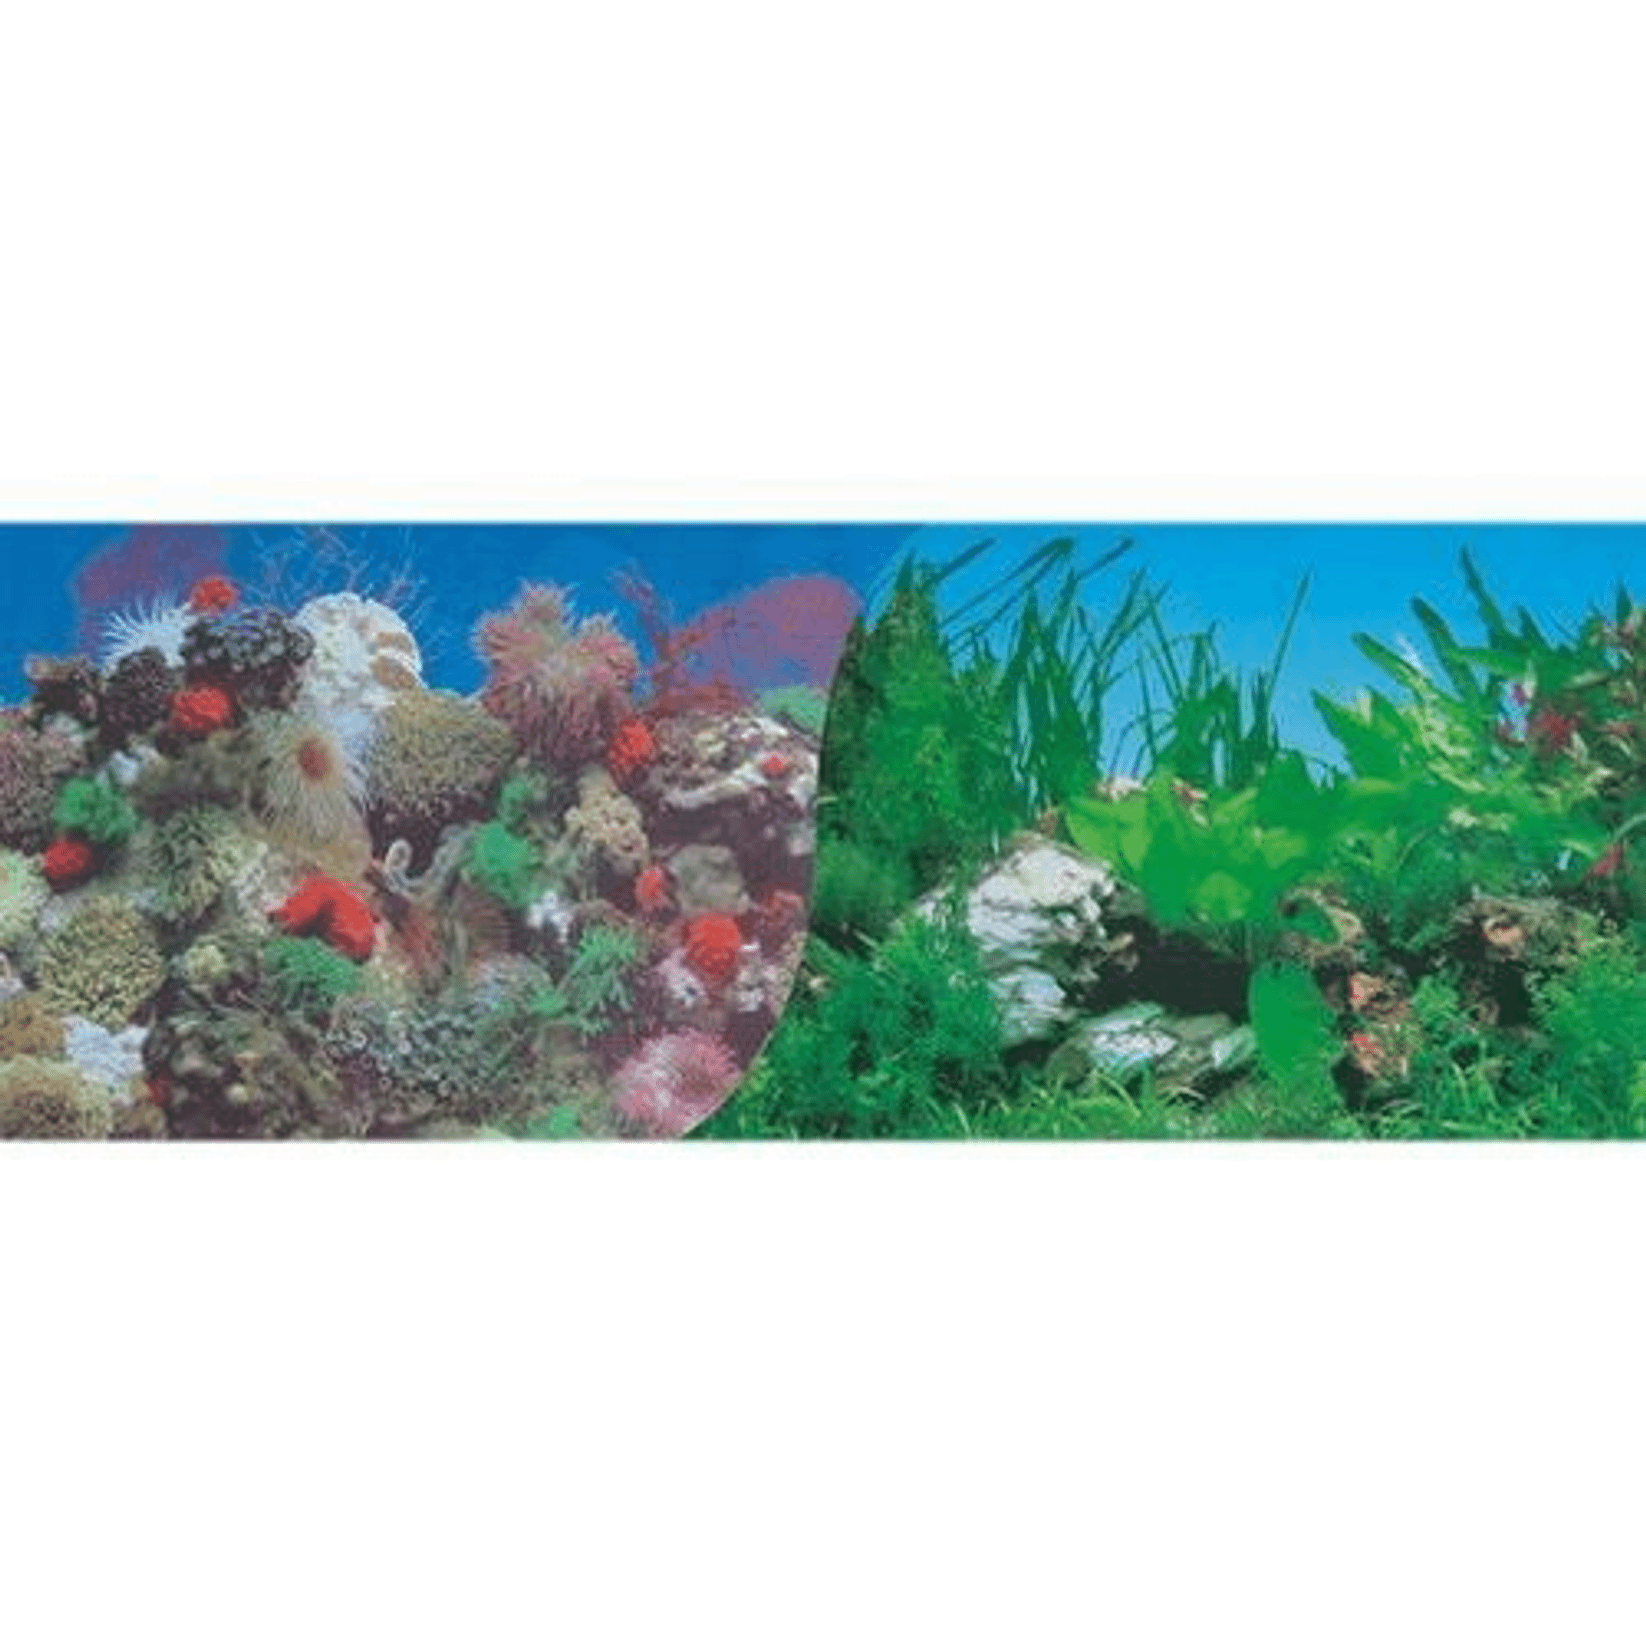 Фон для аквариума Hagen Кораллы с белым камнем, двухсторонний, 30 см